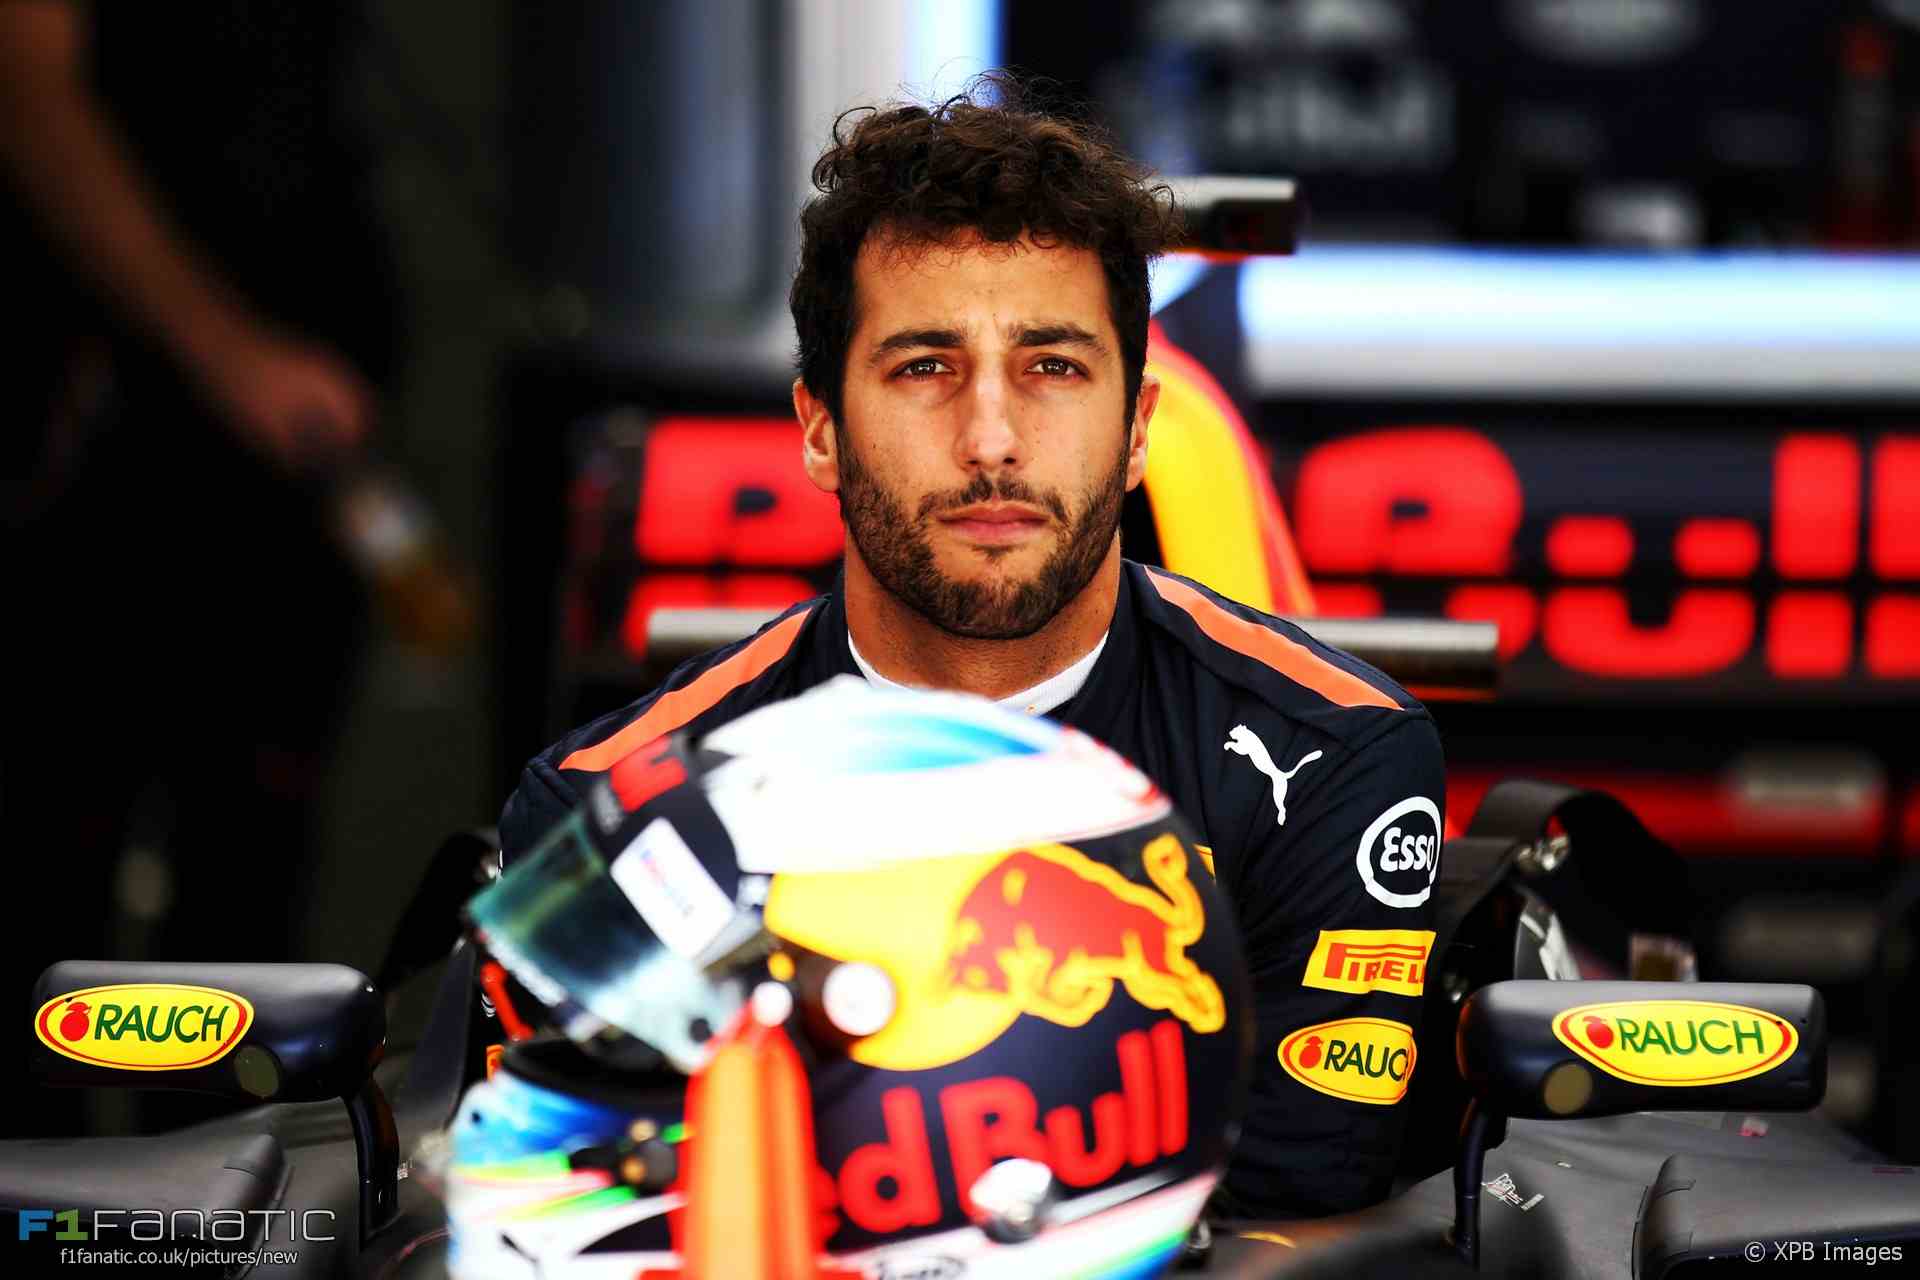 El Sumario - El piloto de Red Bull lideró los tres entrenamientos por delante de su compañero Verstappen y rompió todos los registros